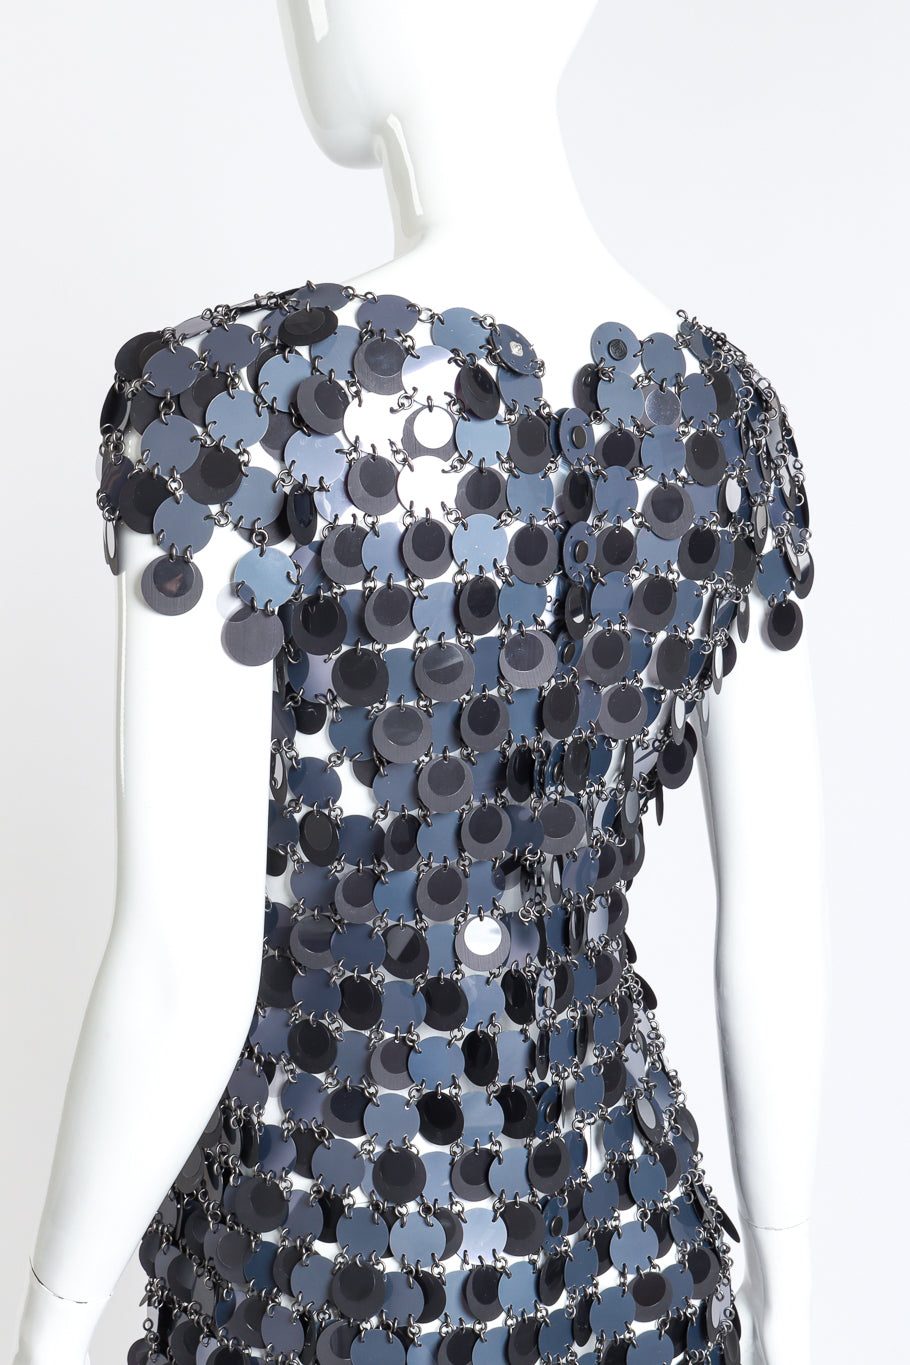 Paco Rabanne Disc Chain Mini Dress 3/4 back on mannequin closeup @recess la